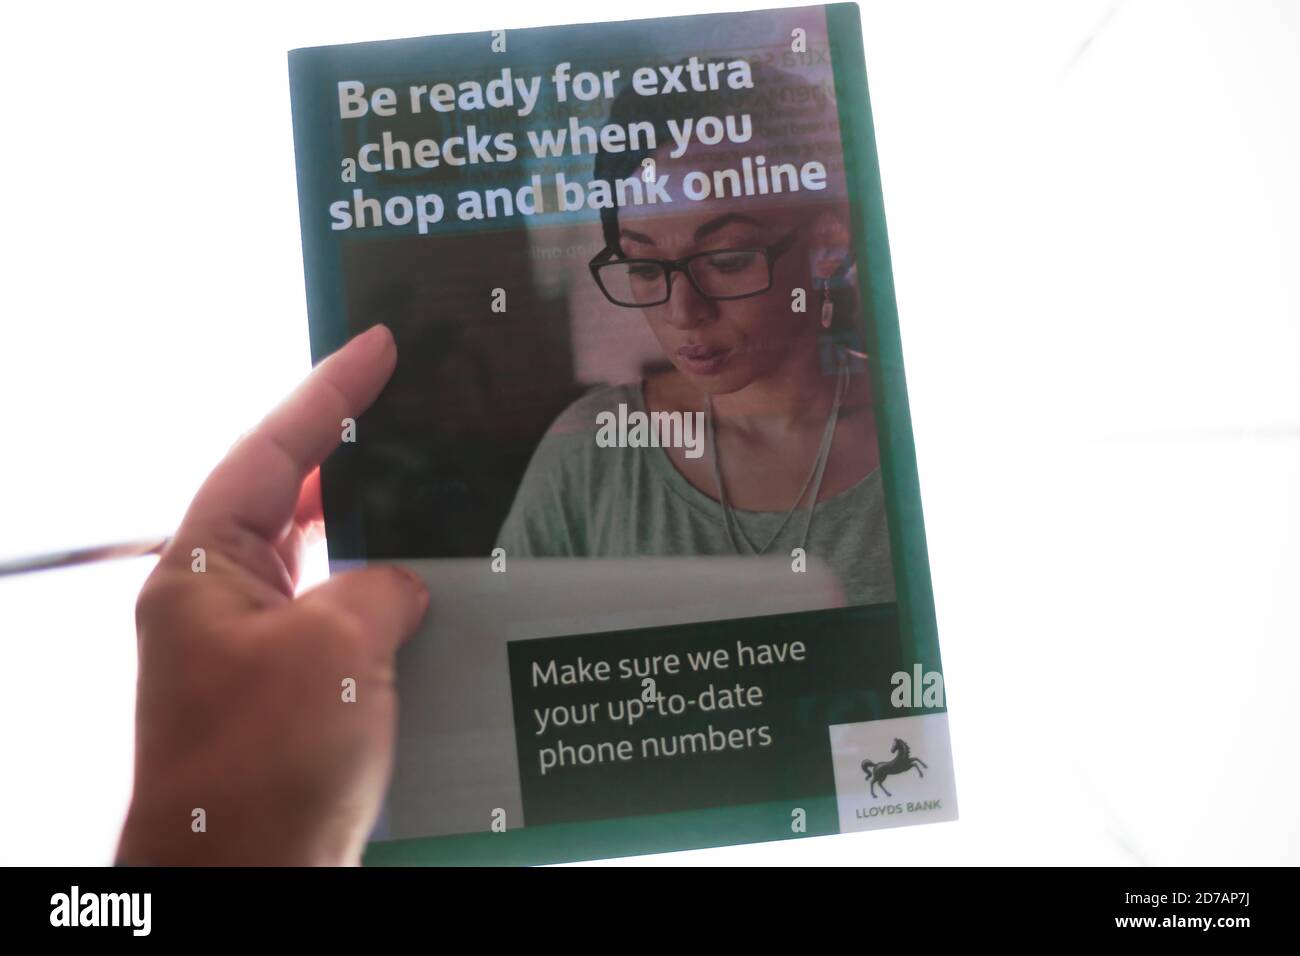 Finanza & Banking /Security Concept - primo piano di una persona Tenere a mano una guida Lloyds Bank su assegni extra in online banking & shopping Foto Stock